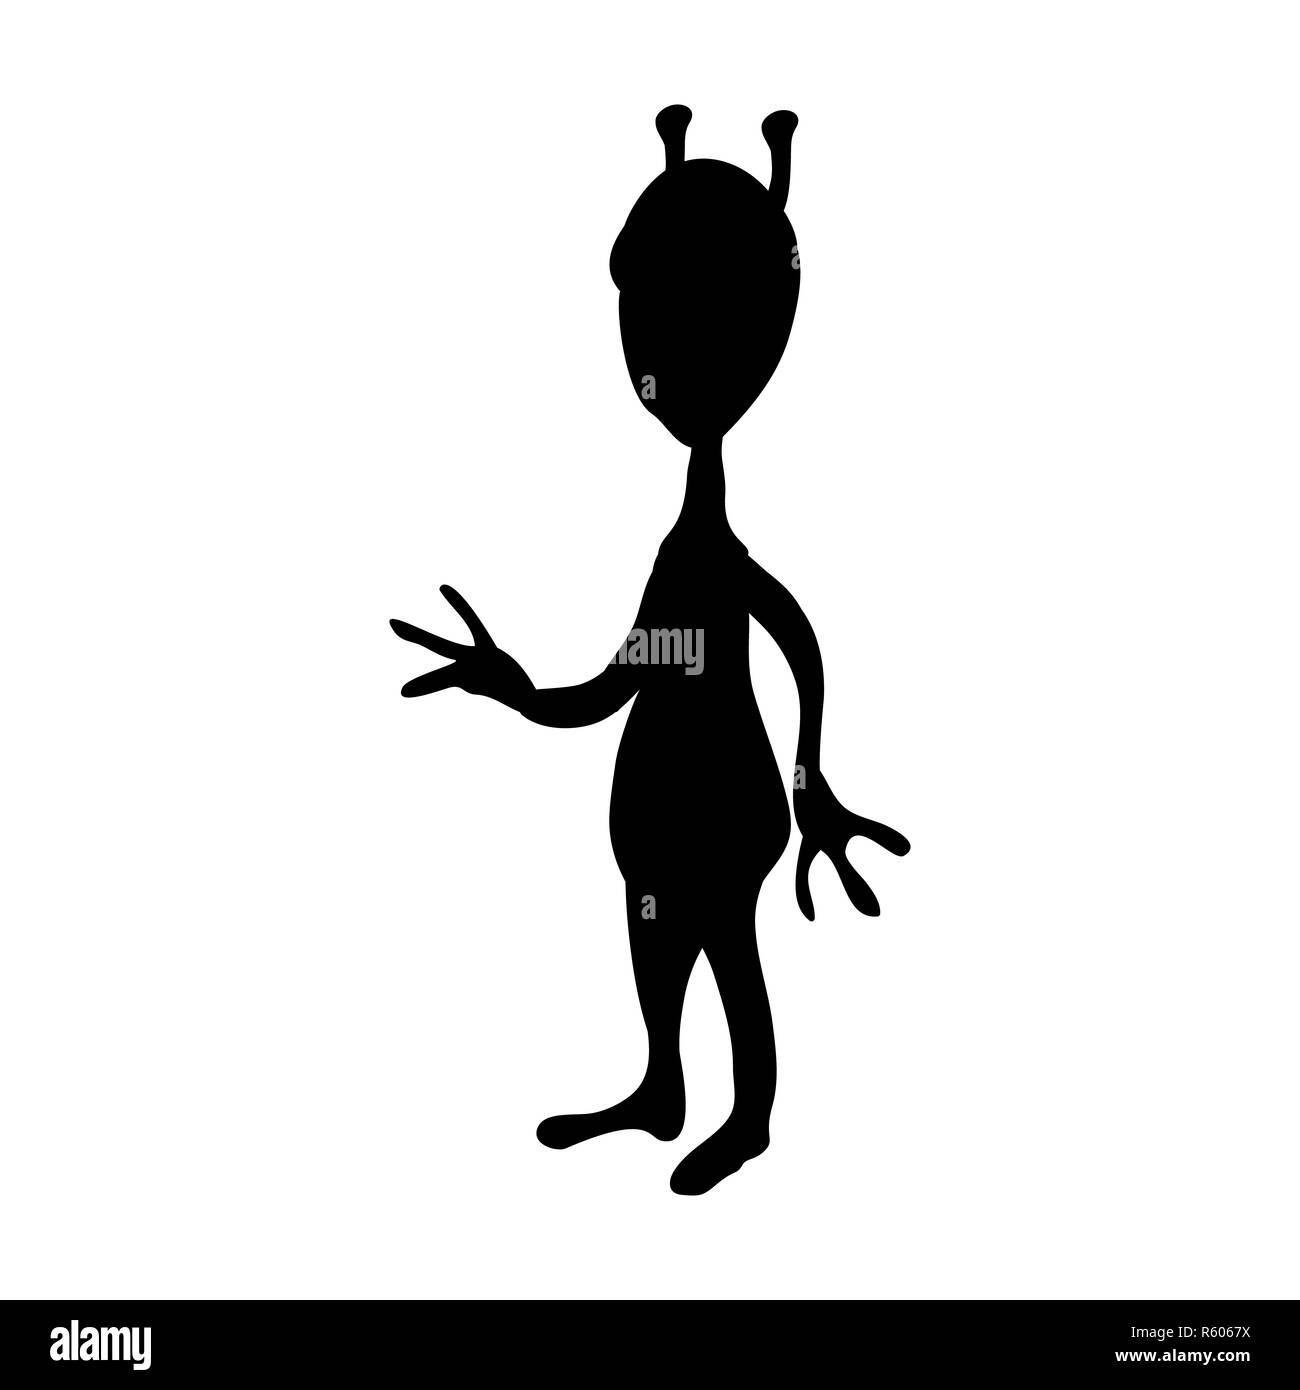 Außerirdische alien silhouette Kosmos Charakter Stockfoto